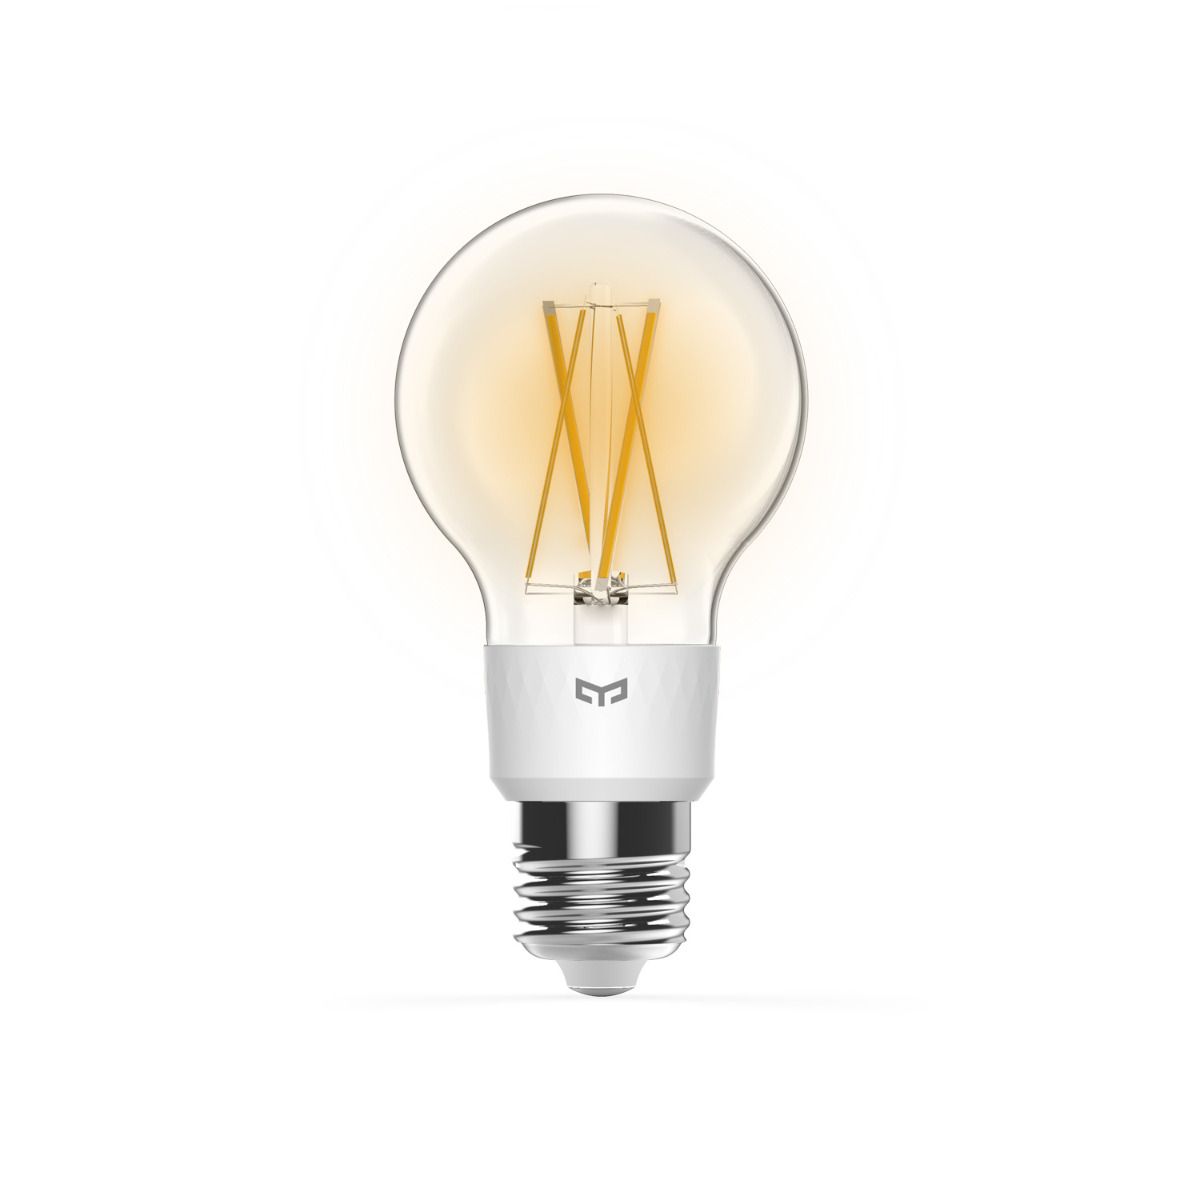 Smartes Stimmungslicht im Glühbirnen-Stil: Yeelight Filament Bulb im Test